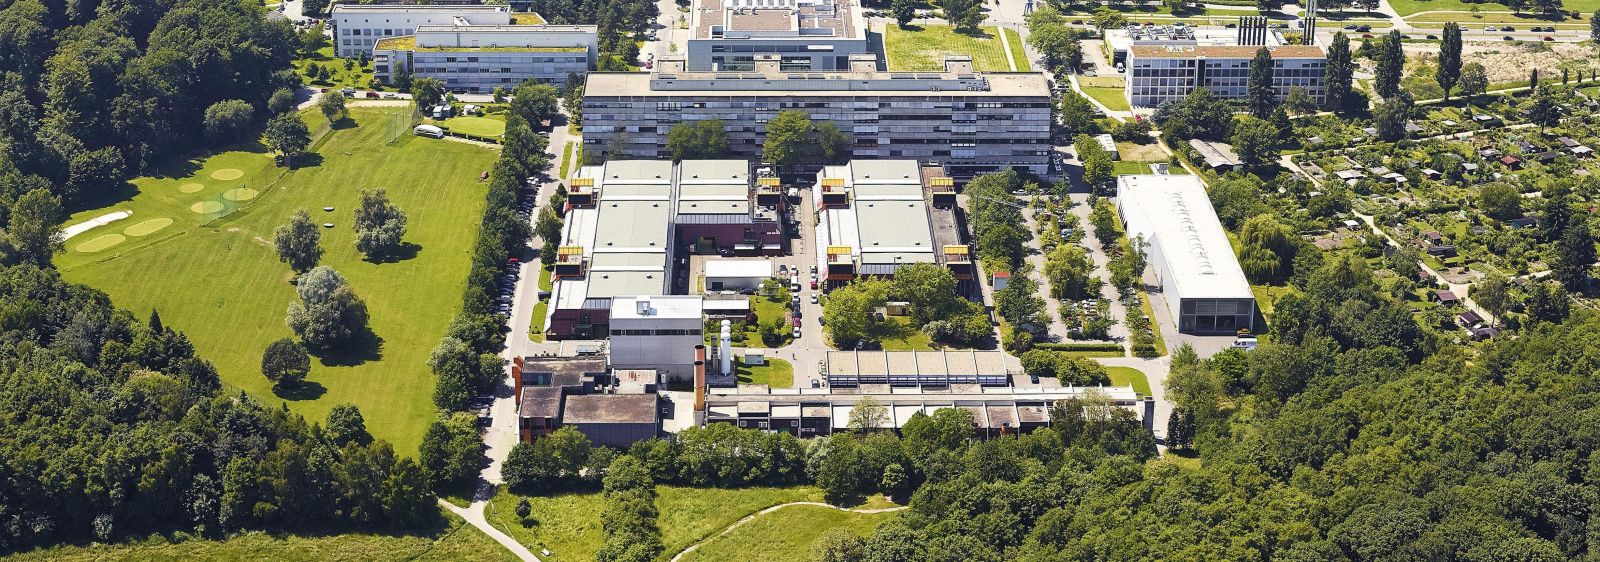 Der Campus Lichtwiese der TU Darmstadt im Süden der Stadt